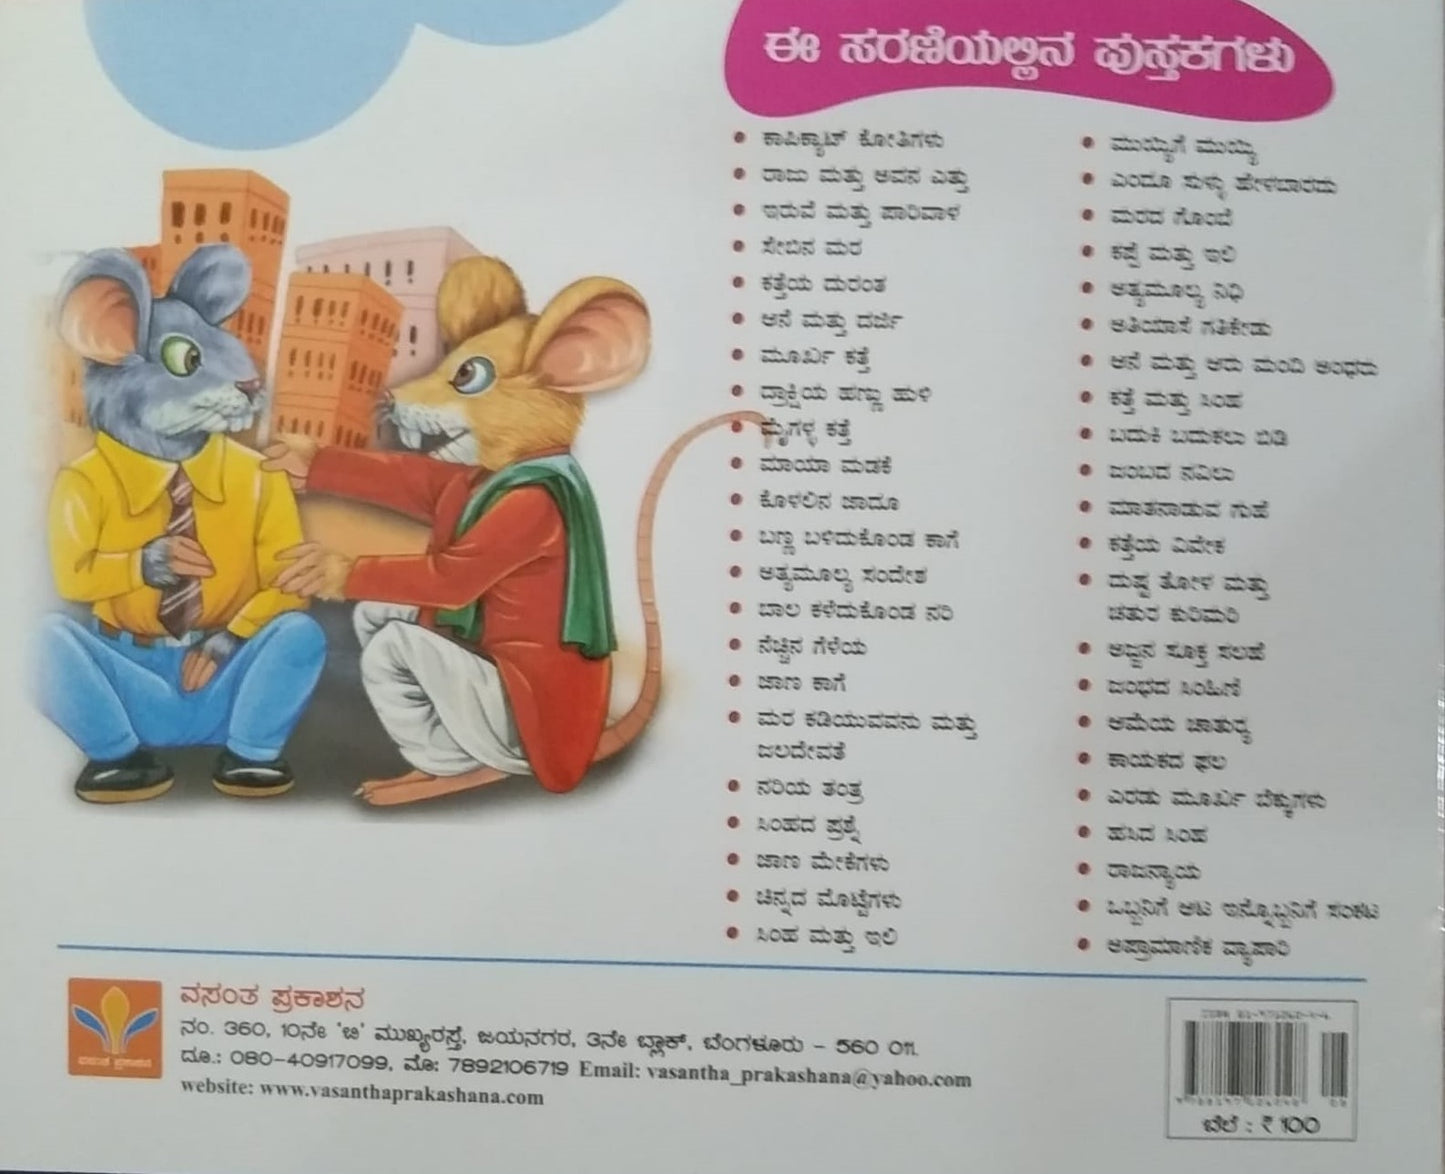 Eradu Moork Bekkugalu is a children's Stories Book, Edited by S. Pattabhirama, Published by Vasantha Prakashana , Collection of intresting stories